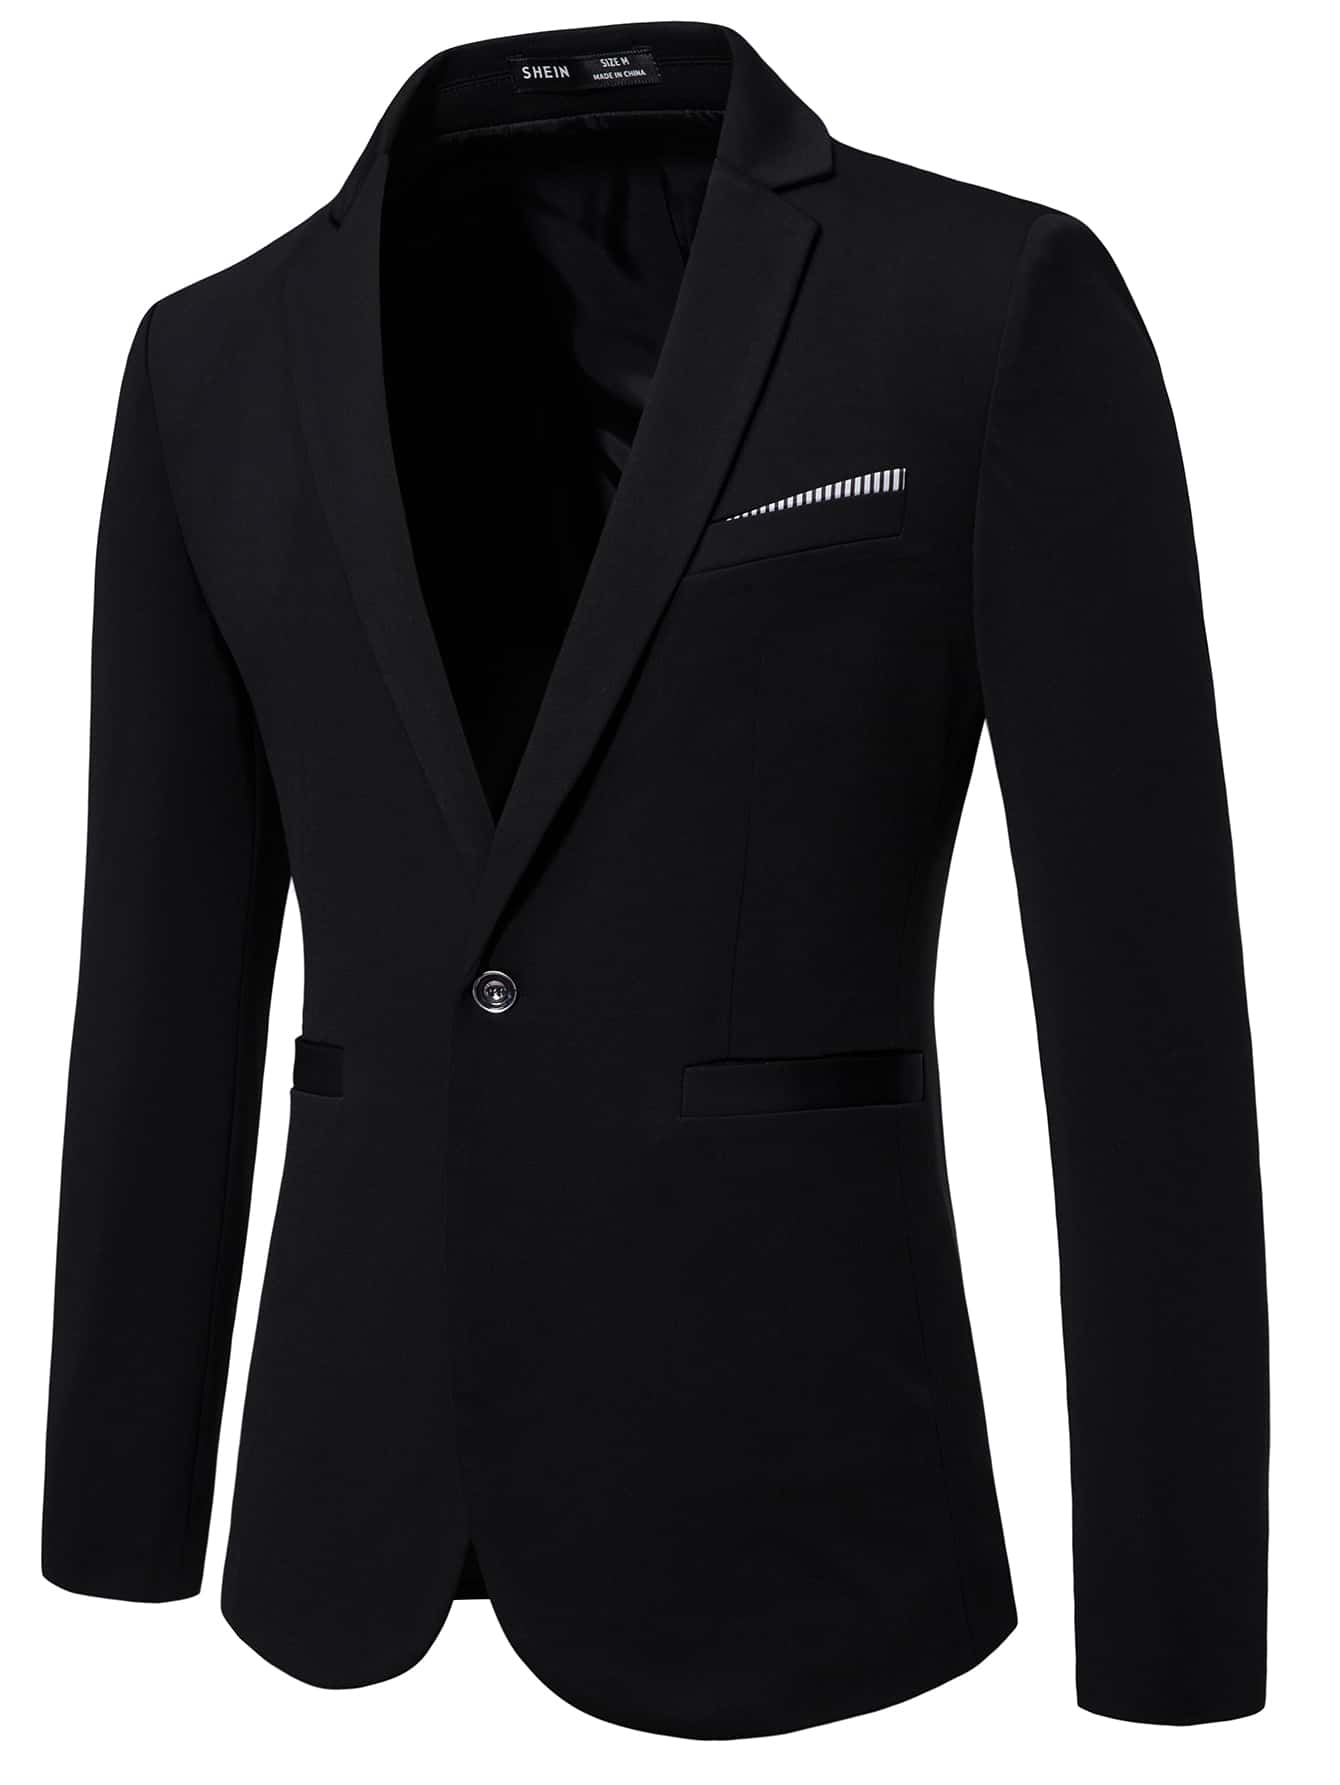 Мужской пиджак с длинными рукавами и зубчатыми лацканами Manfinity Mode, черный